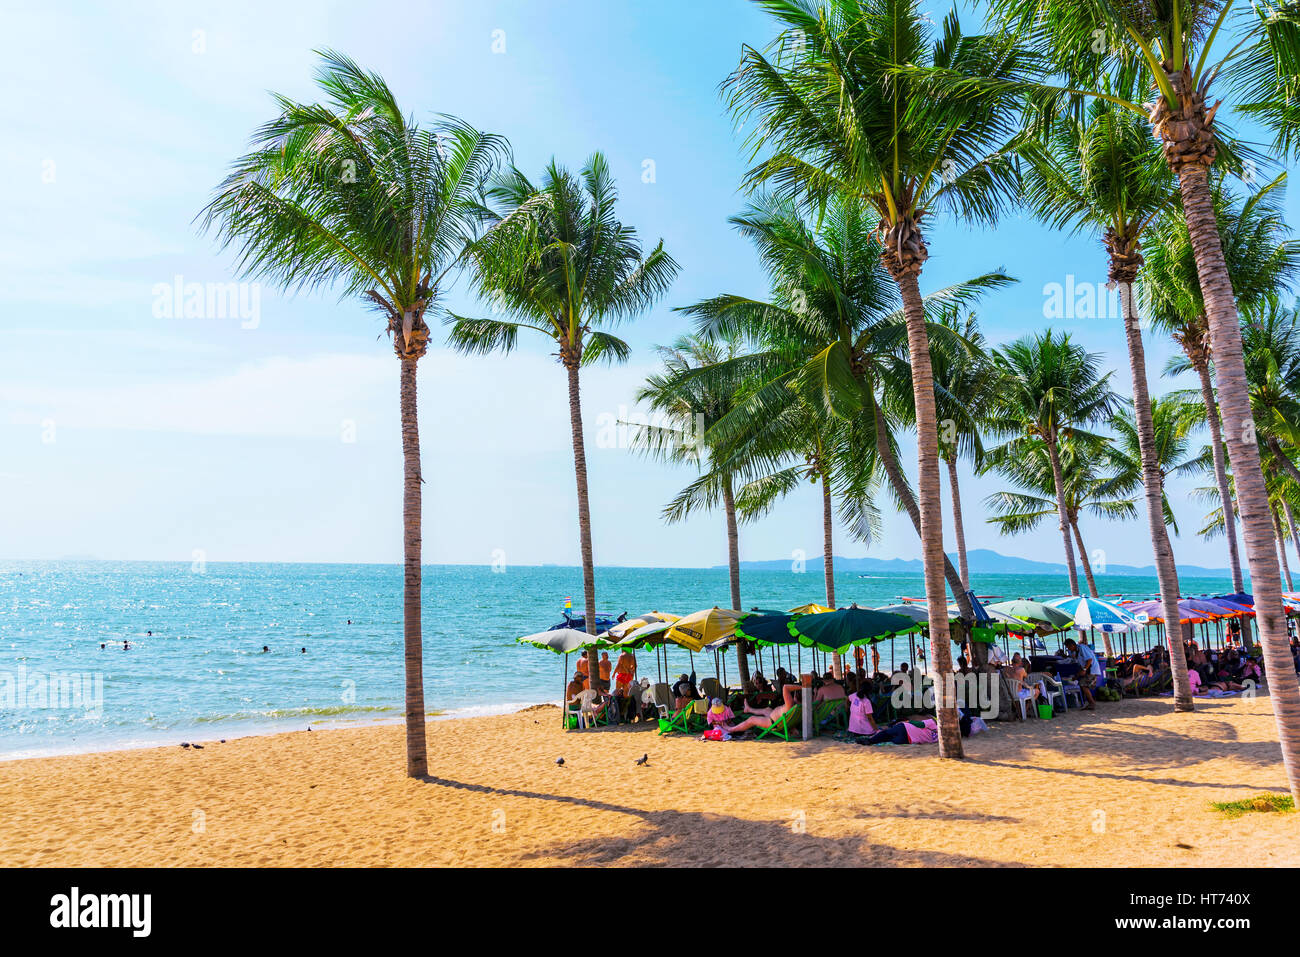 PATTAYA, THAÏLANDE - 24 janvier : c'est une vue de la plage de Jomtien a popular tourist beach à Pattaya où de nombreux voyageurs venus à prendre le soleil le 24 janvier Banque D'Images